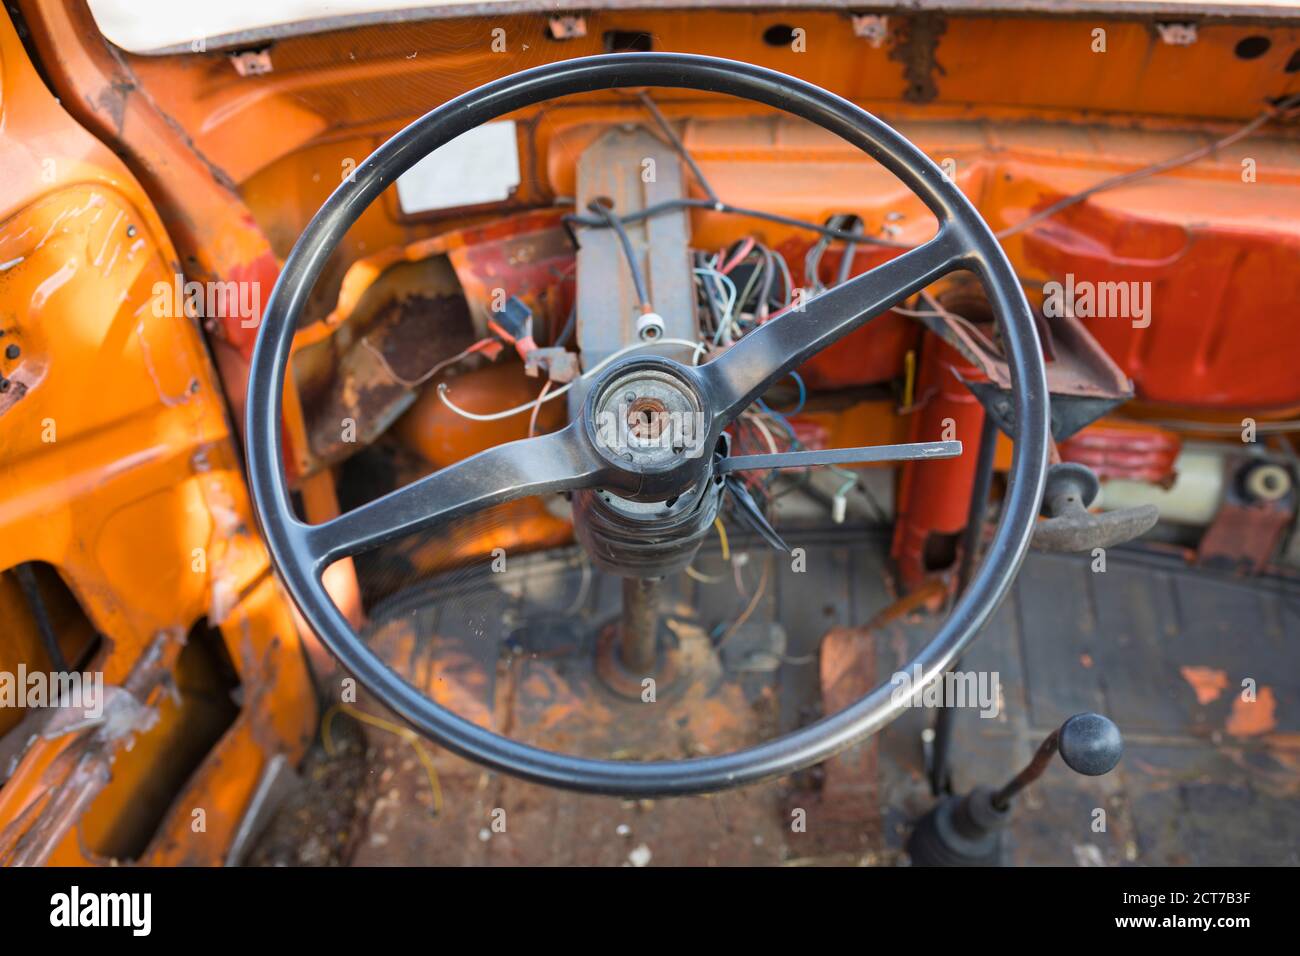 Anteriore di un furgone Volkswagen demolito arancione con volante Foto Stock